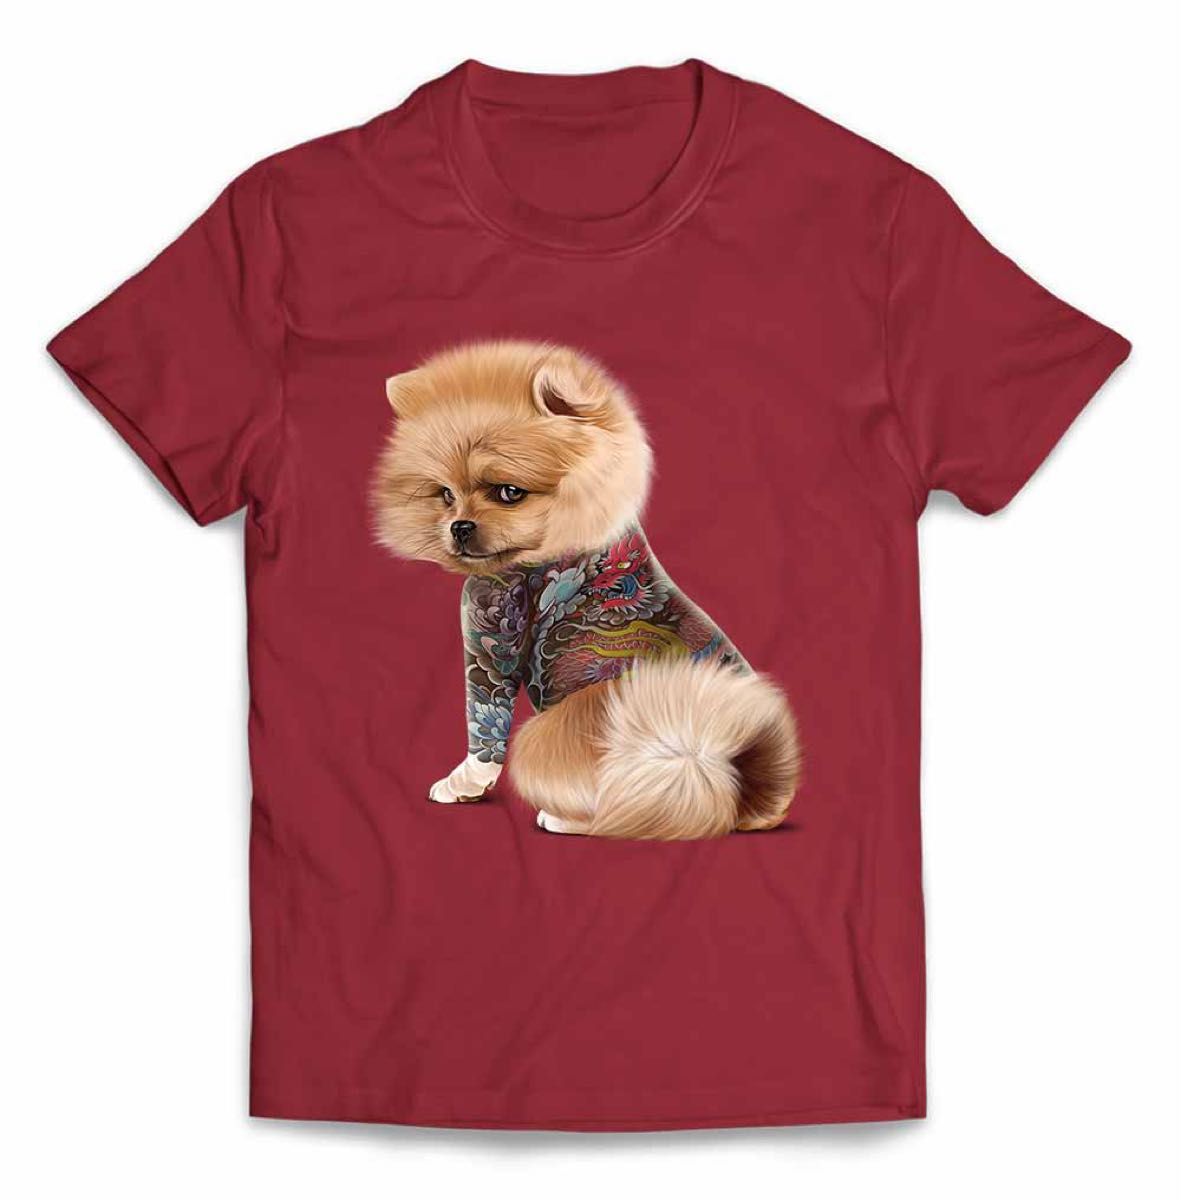 ポメラニアン 犬 いぬ タトゥー 刺青 半袖 Tシャツ メンズ レディース